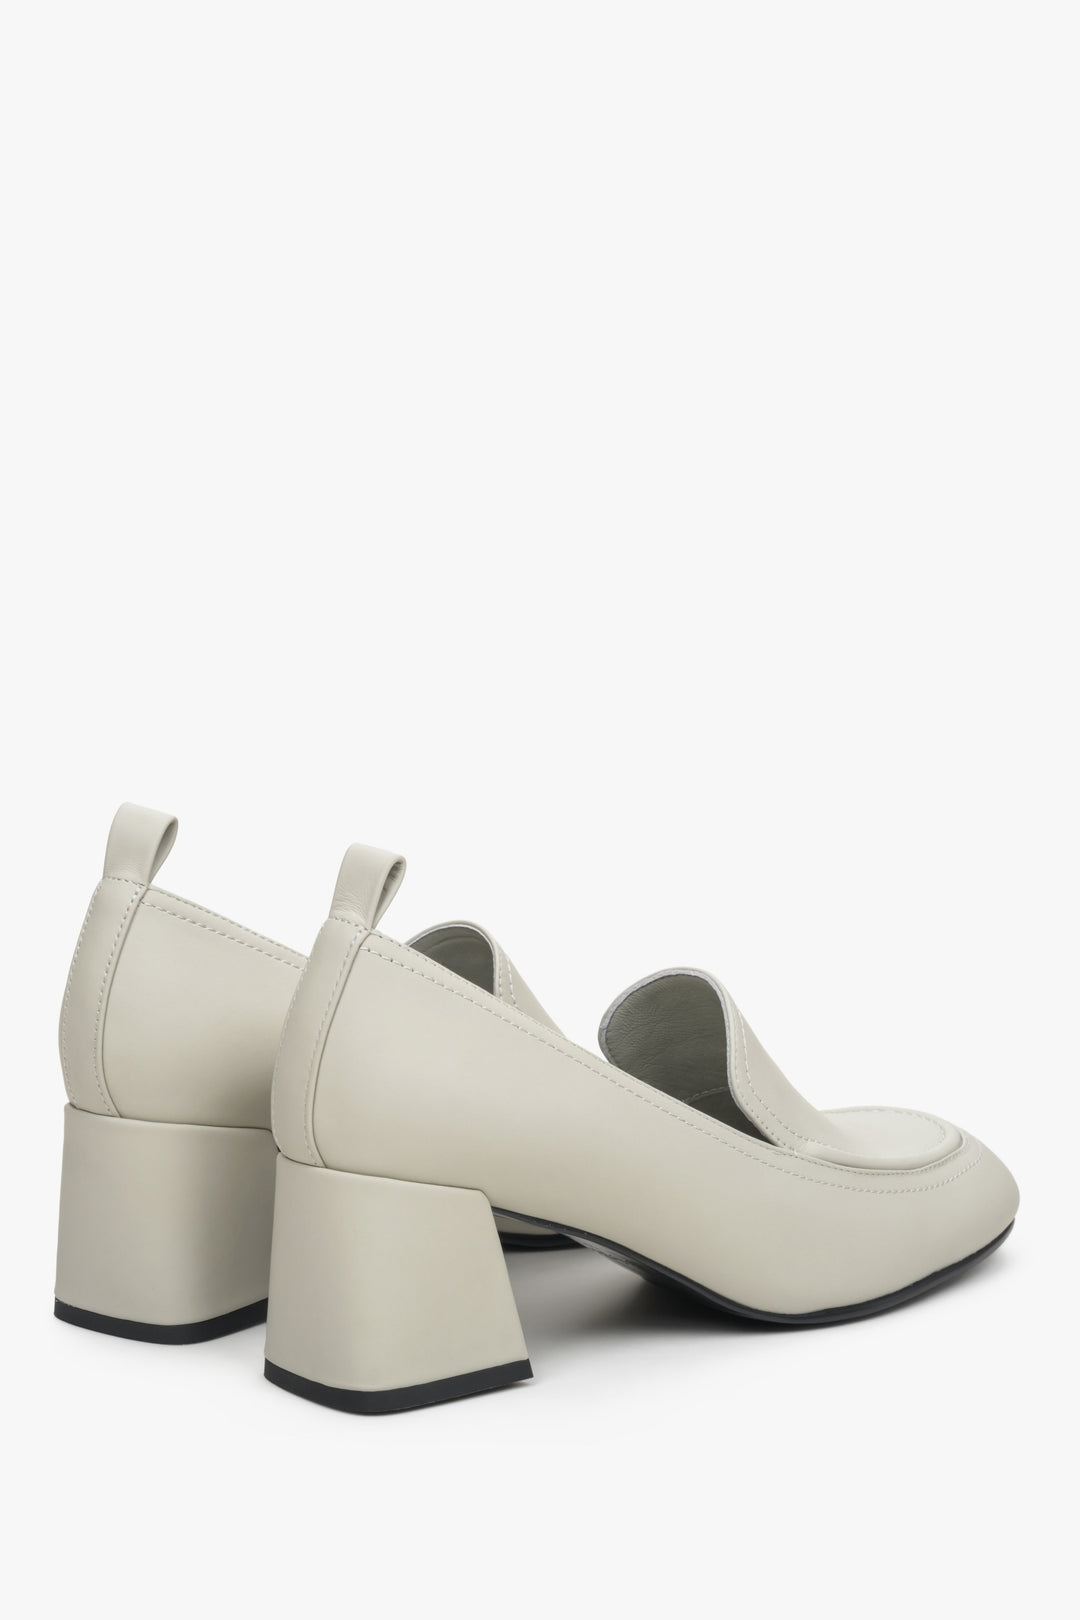 Sturdy block heel light beige leather loafers.